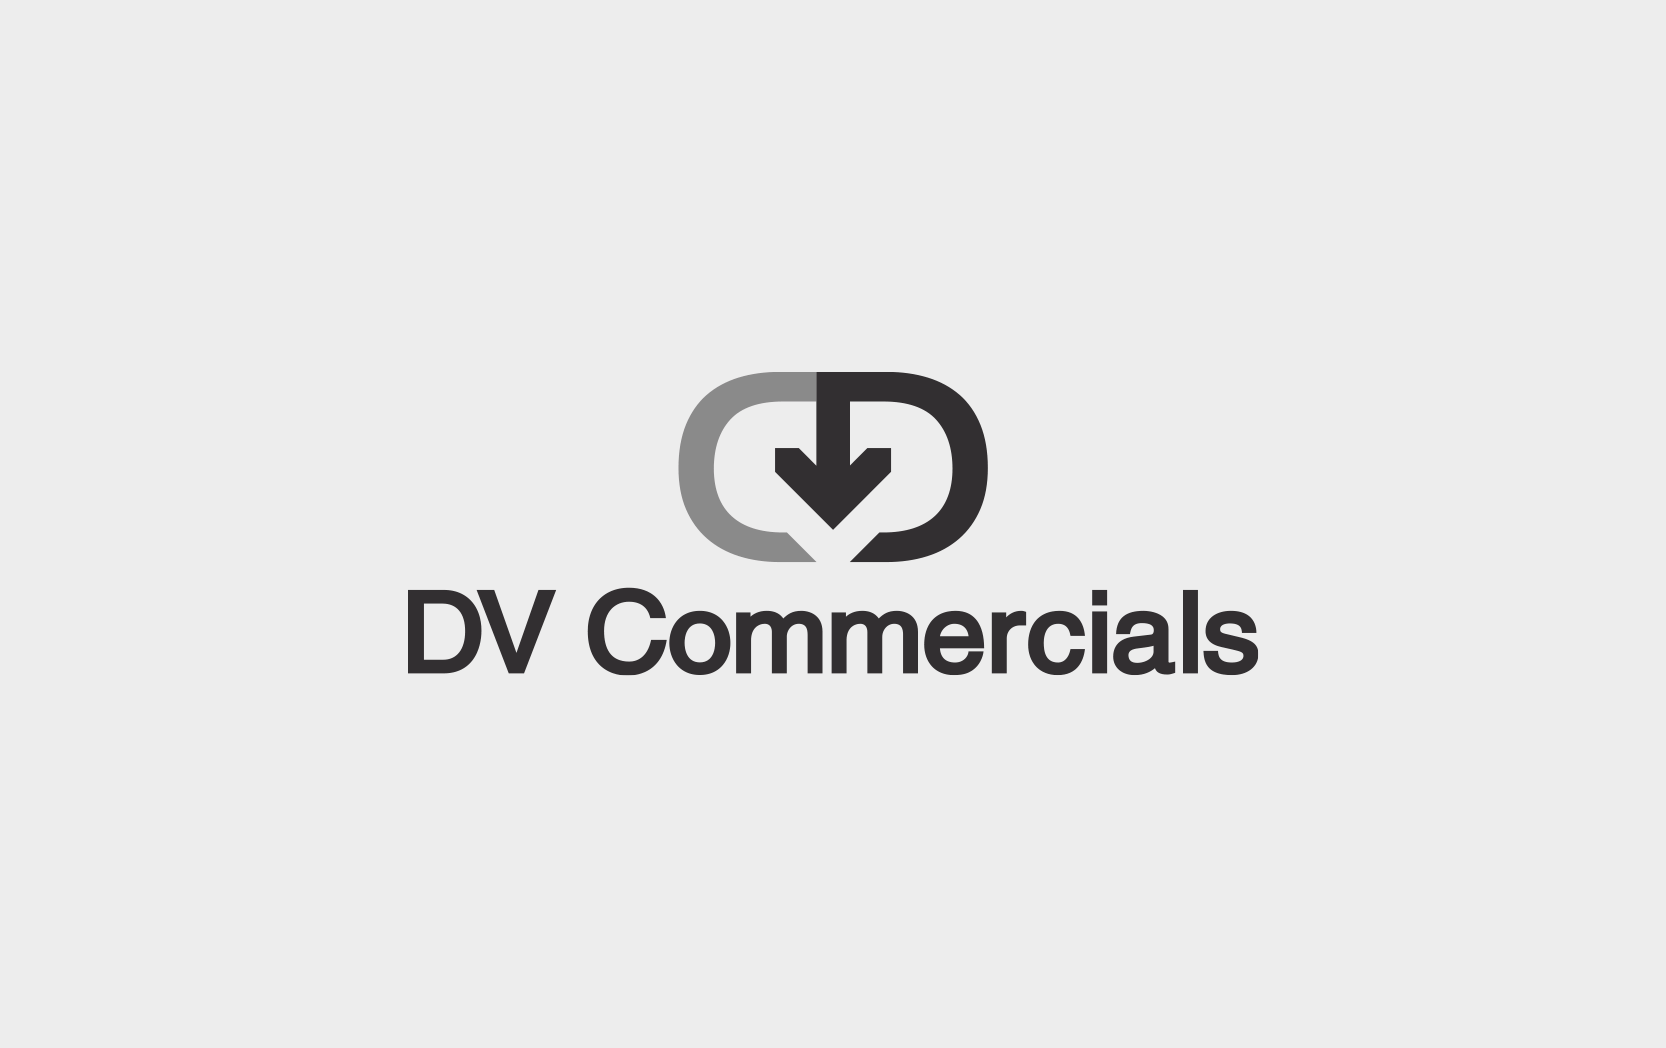 DV Commercials